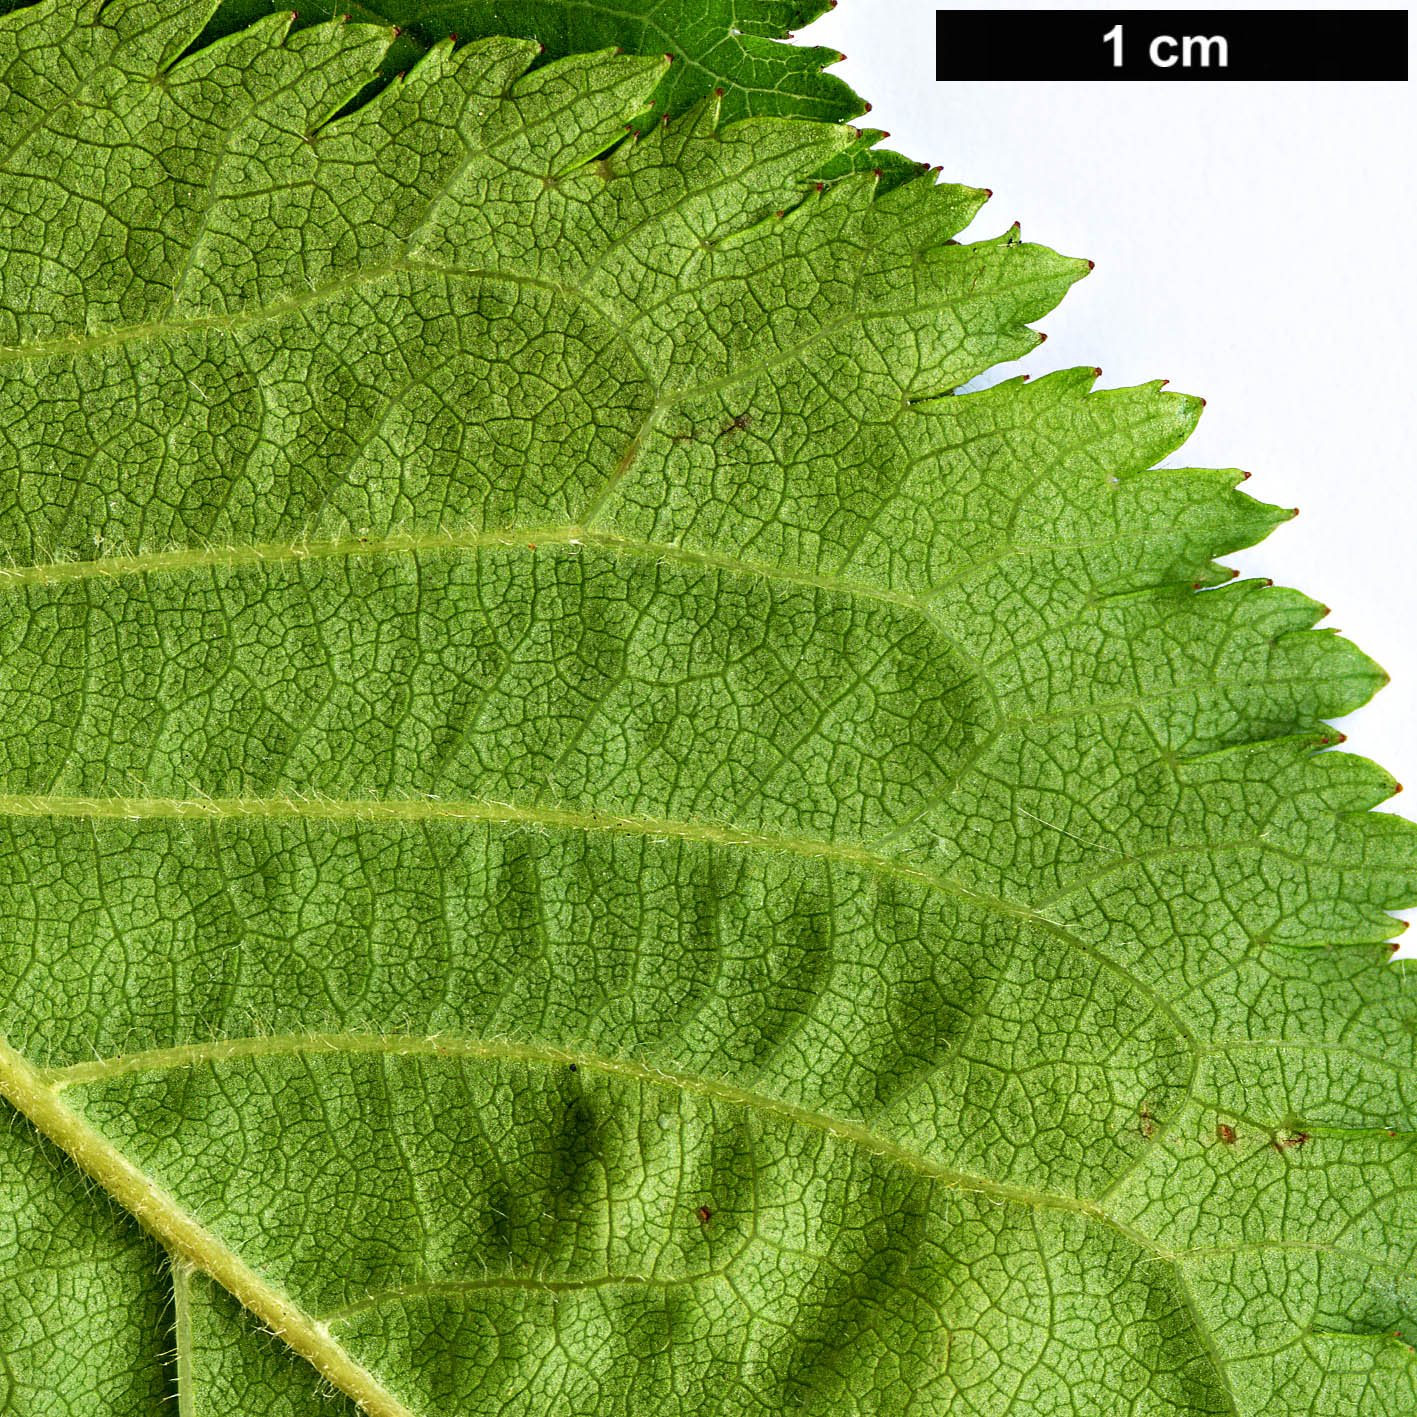 High resolution image: Family: Rosaceae - Genus: Prunus - Taxon: nipponica - SpeciesSub: var. kurilensis